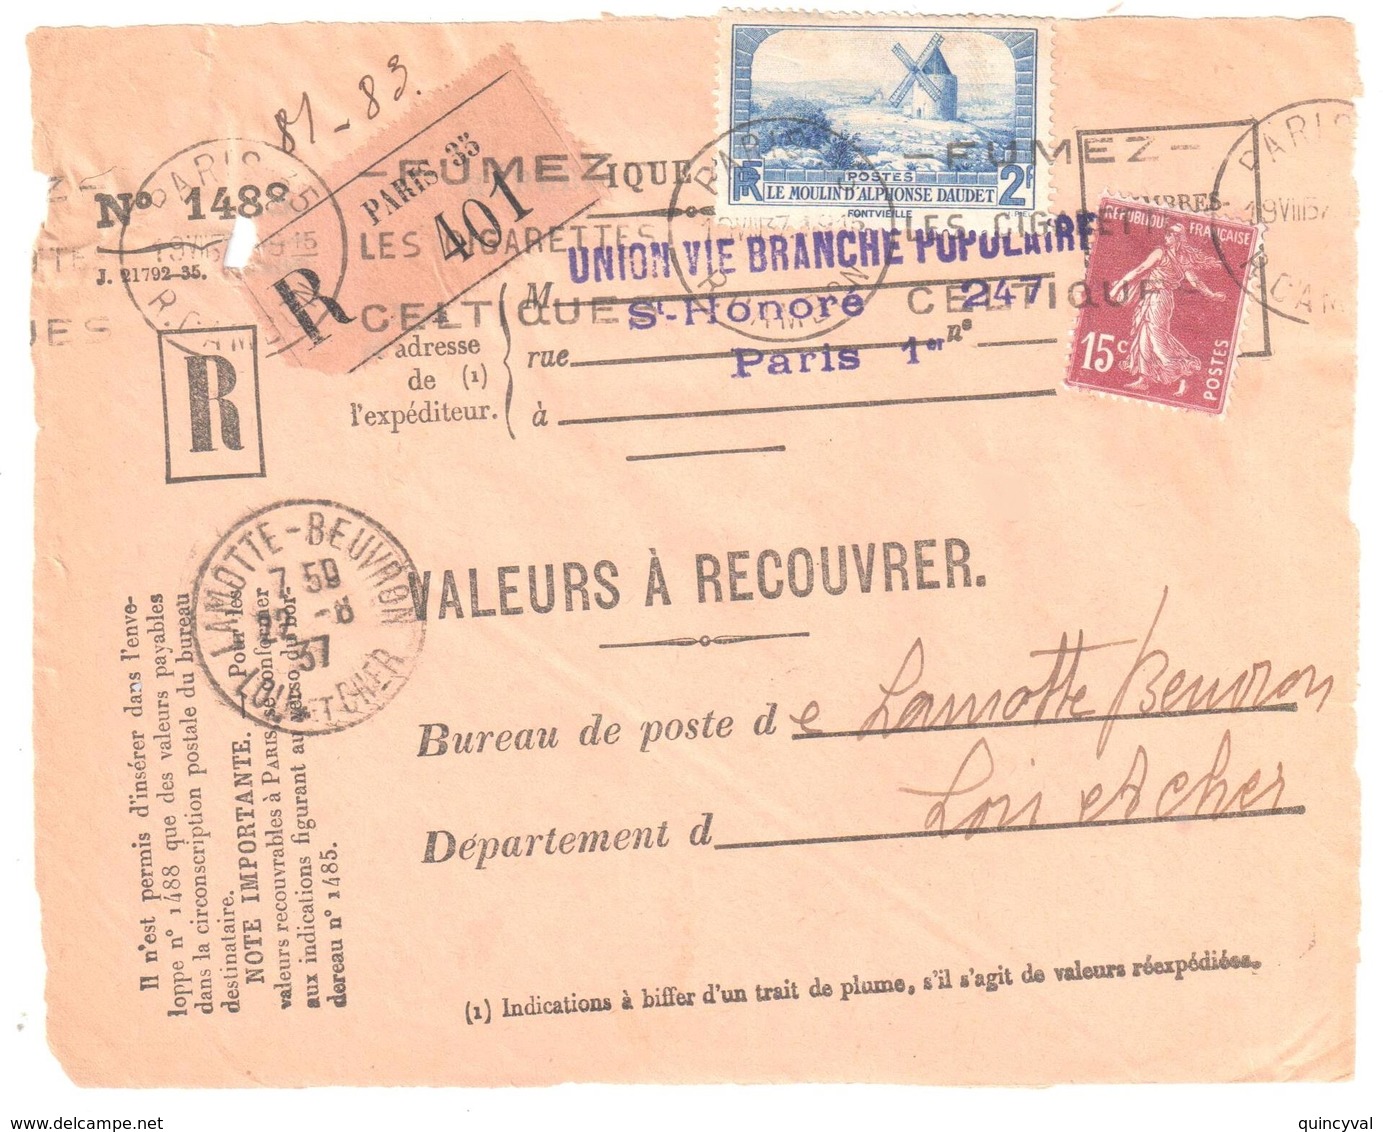 PARIS 35 Valeur à Recouvrer 1488 2F Moulin Daudet 15c Semeuse Yv 189 311 Ob MECANIQUE 1937 Dest Lamotte Beuvron - Lettres & Documents